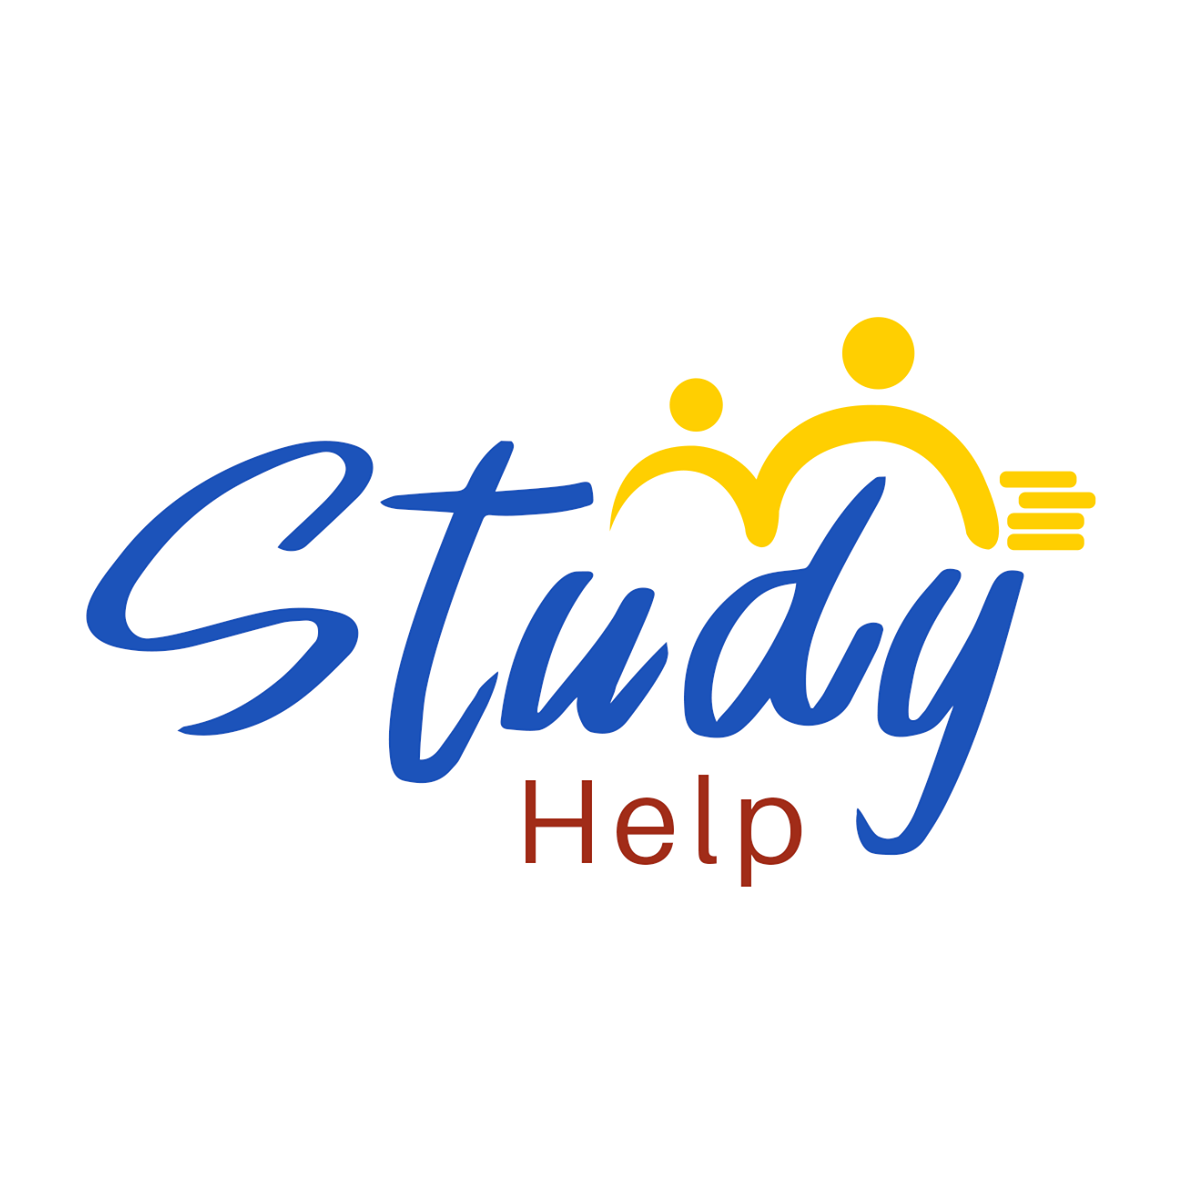 Study_Help_logoar6gf.png